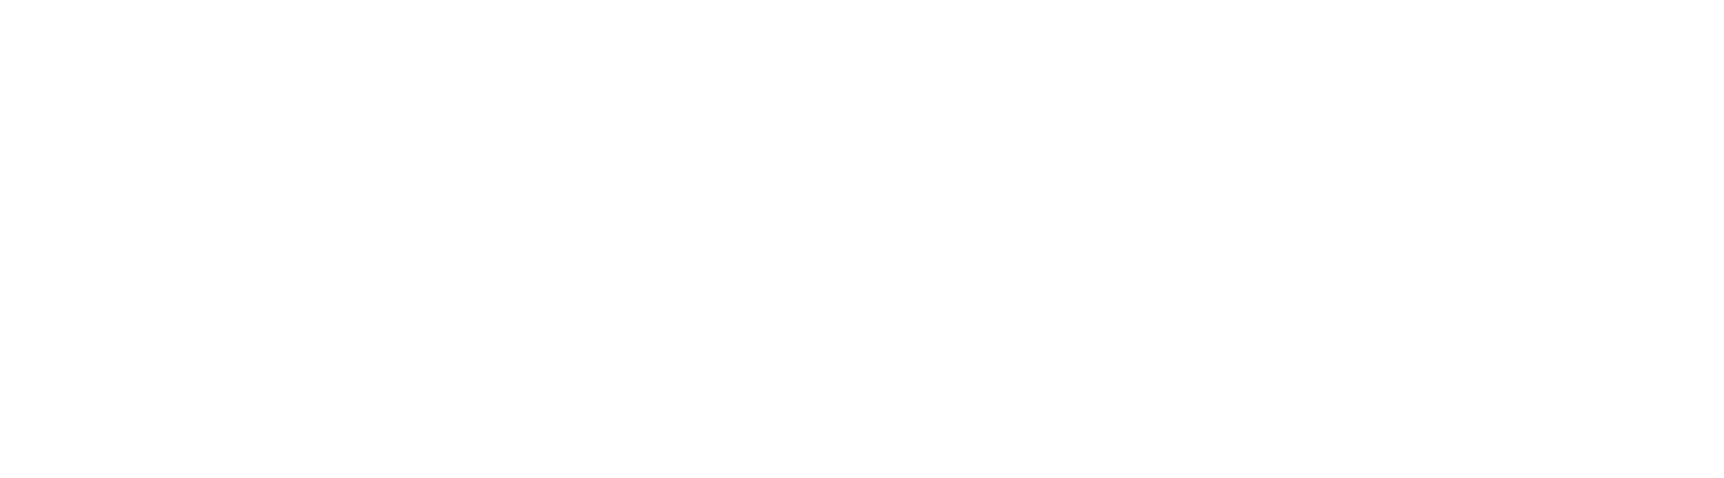 Street Outlaws vs the World logo